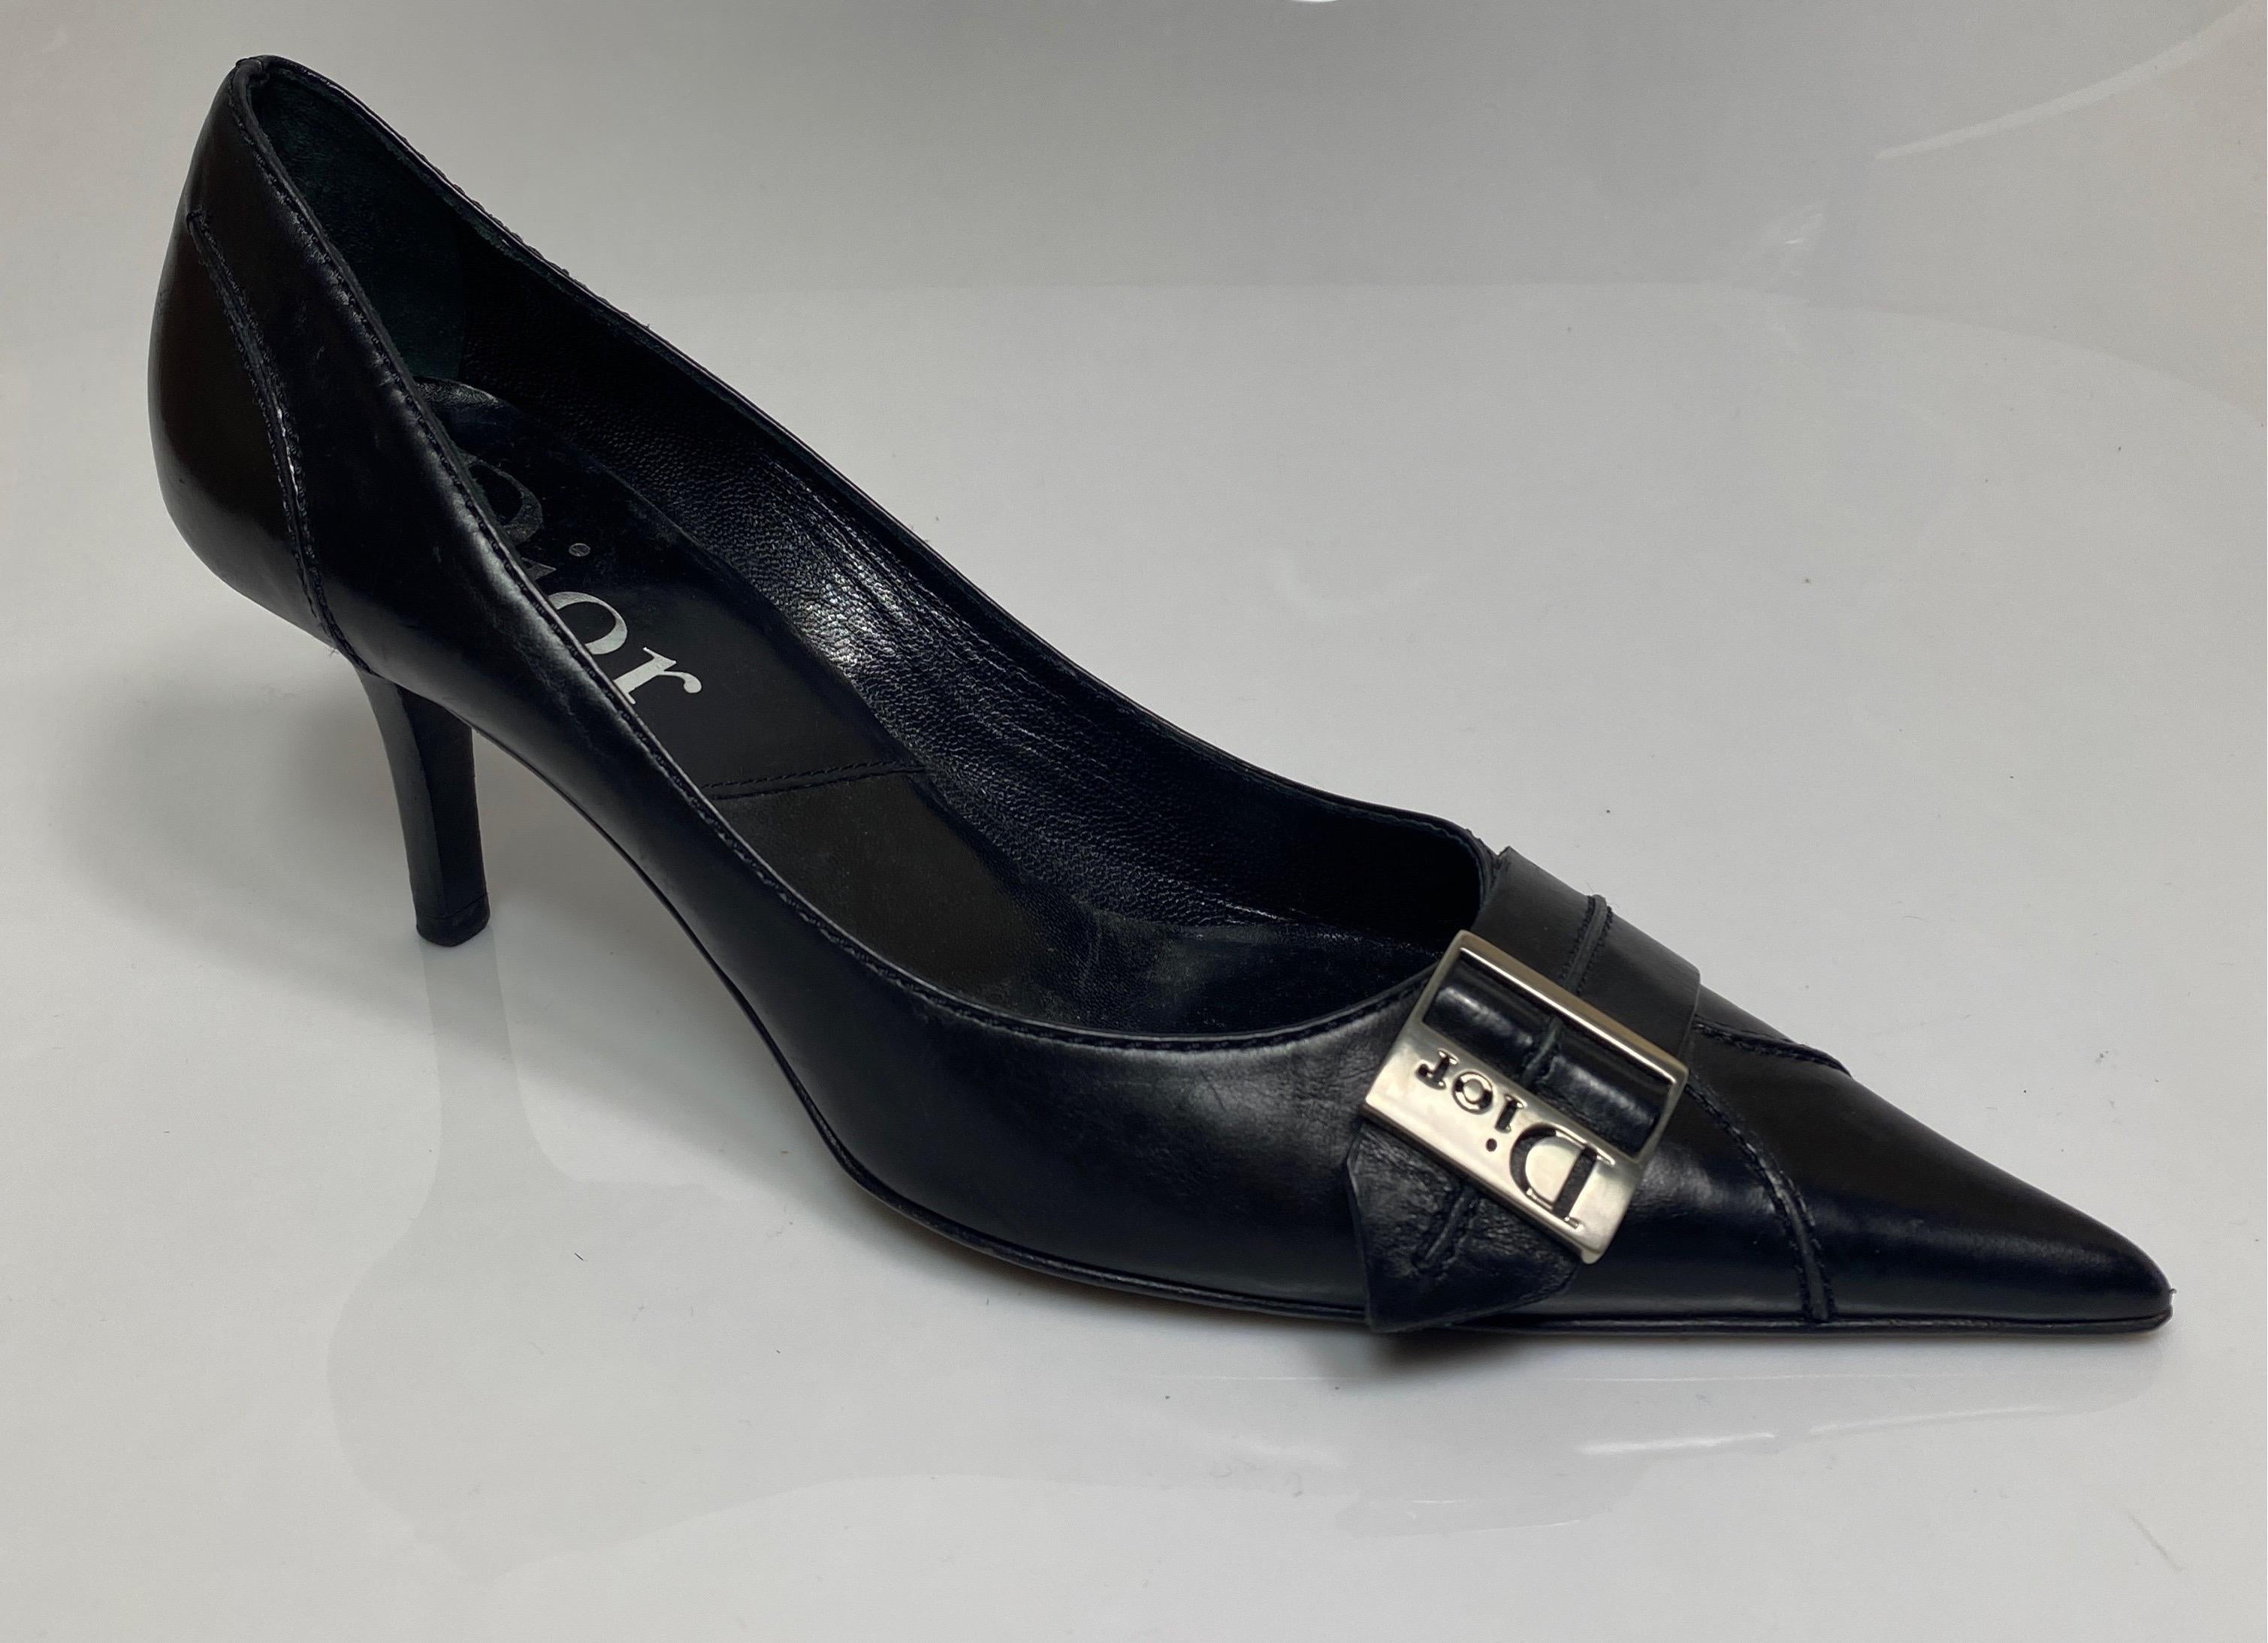 Christian Dior Vintage Schwarz Leder Pumpe mit Silber Dior Schnalle-Größe 37,5. Diese Vintage-Schuhe sind aus den frühen 2000er Jahren und sind wie beschrieben:
Spitz zulaufende Zehenbox
1,25